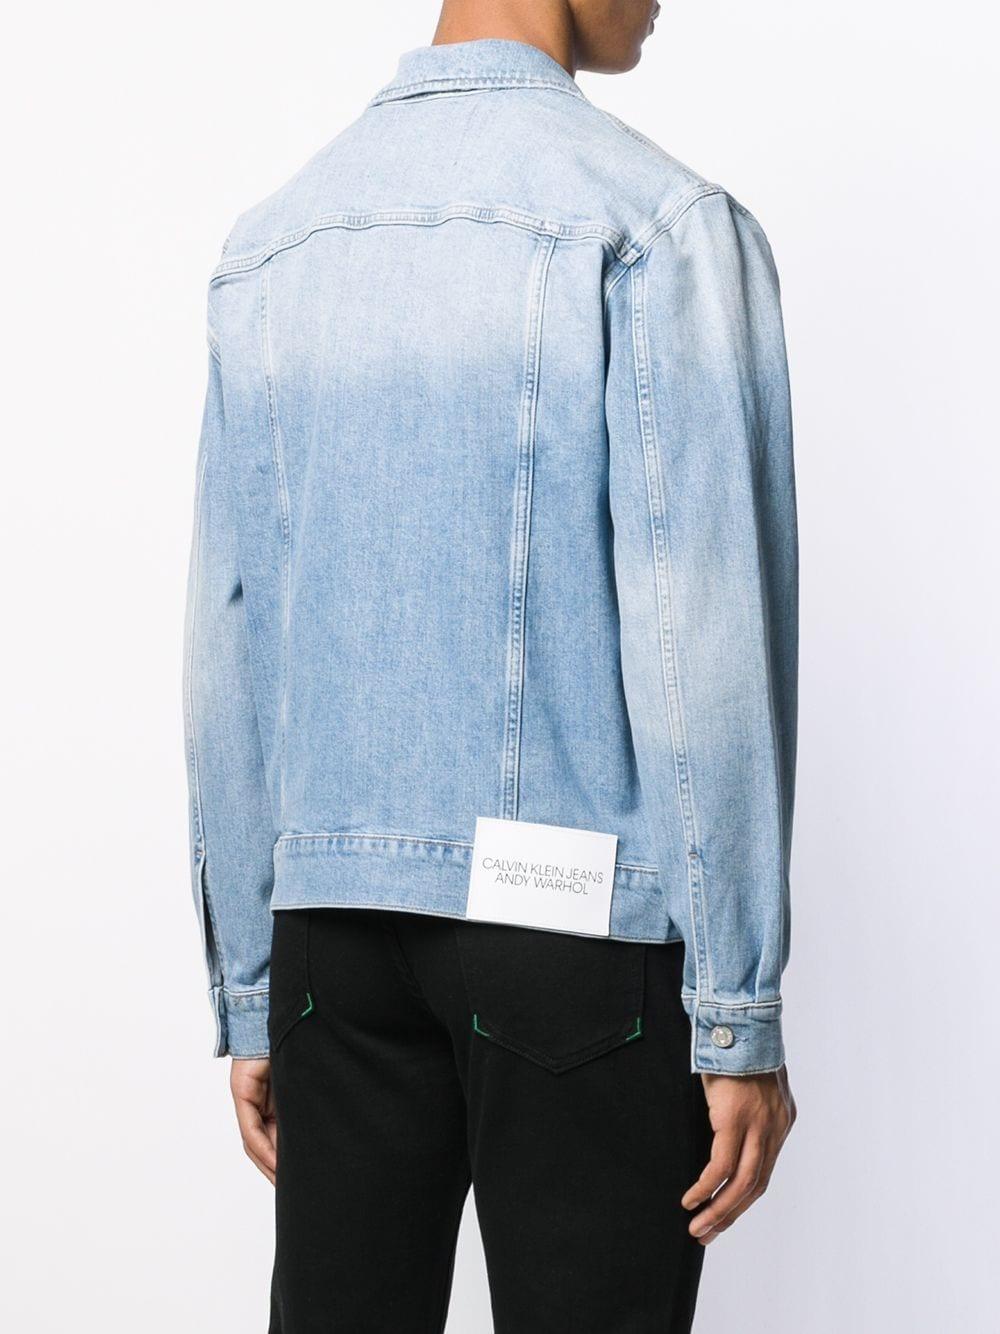 Calvin Klein X Andy Warhol Denim Jacket in Blue for Men - Lyst